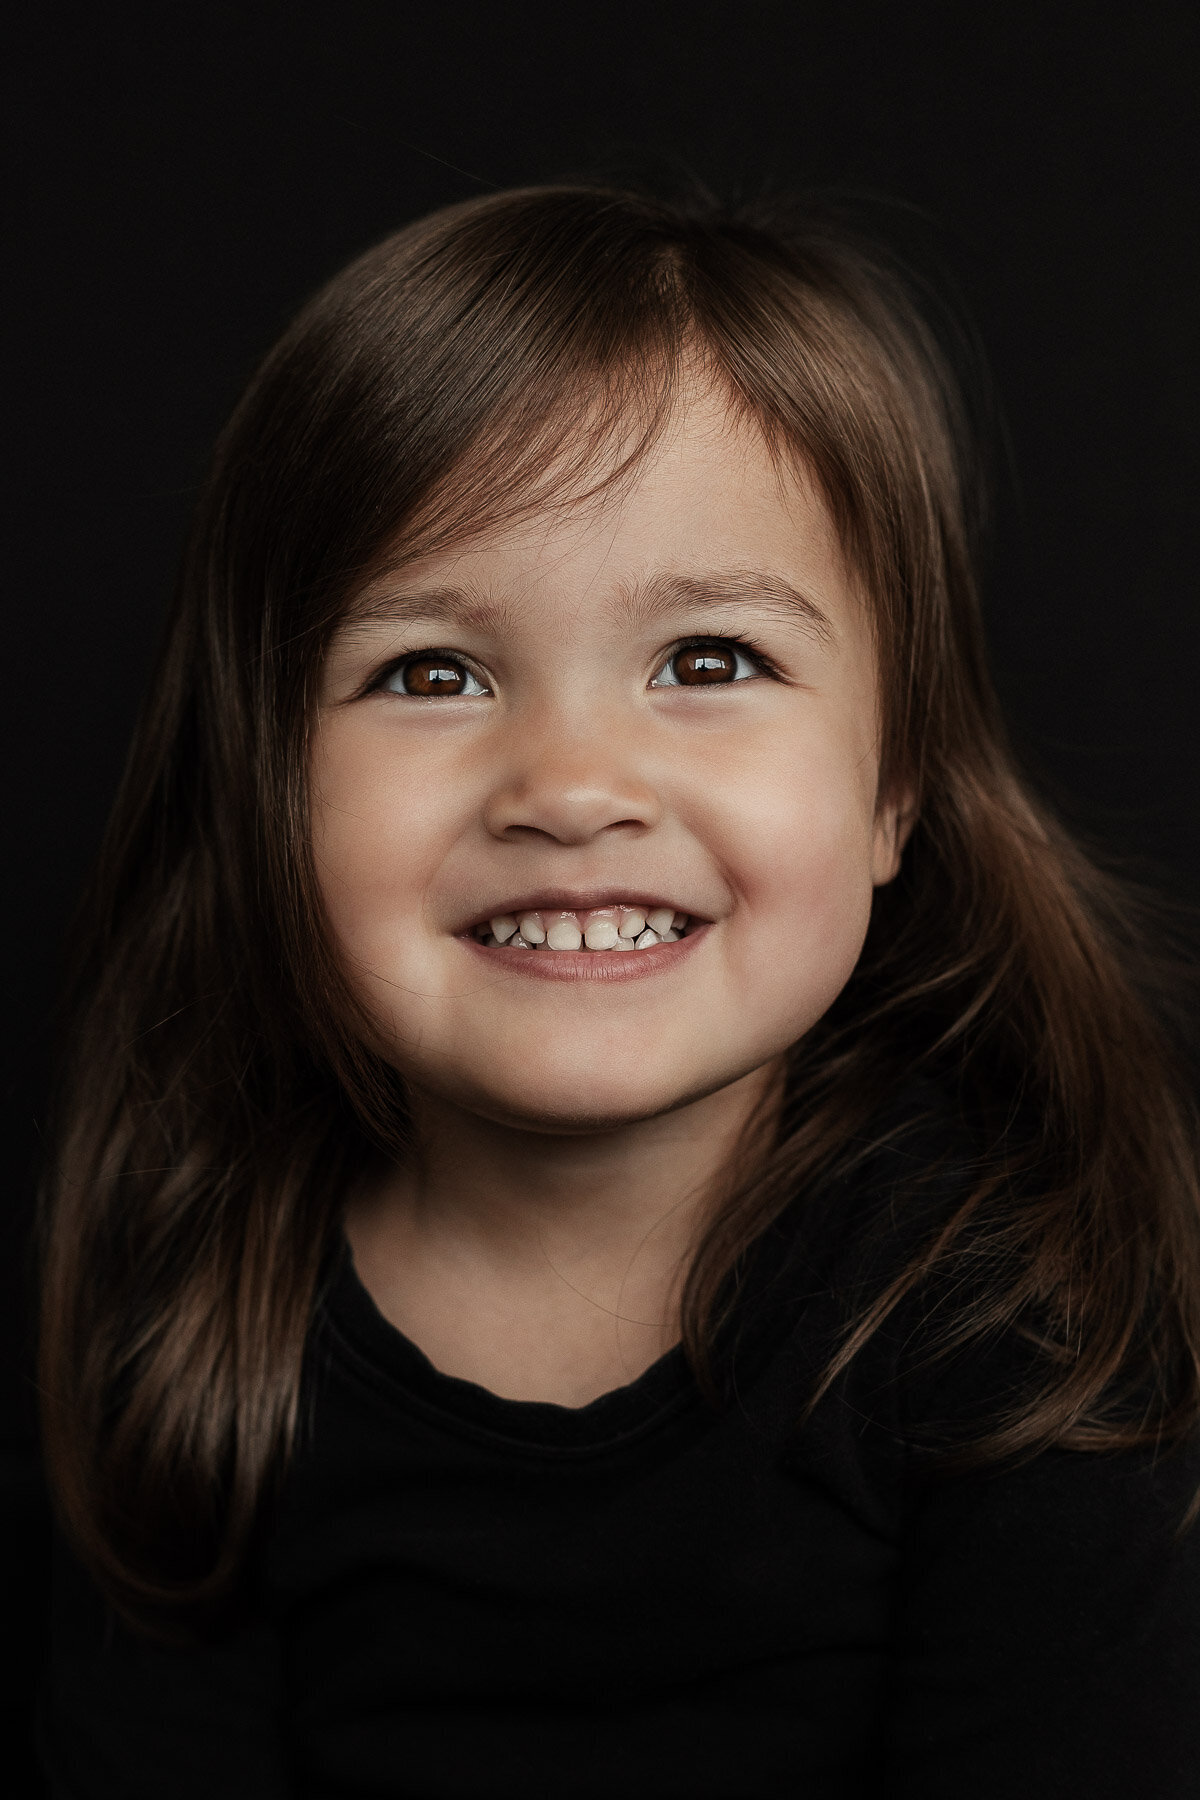 portretfoto kind zwarte achtergrond